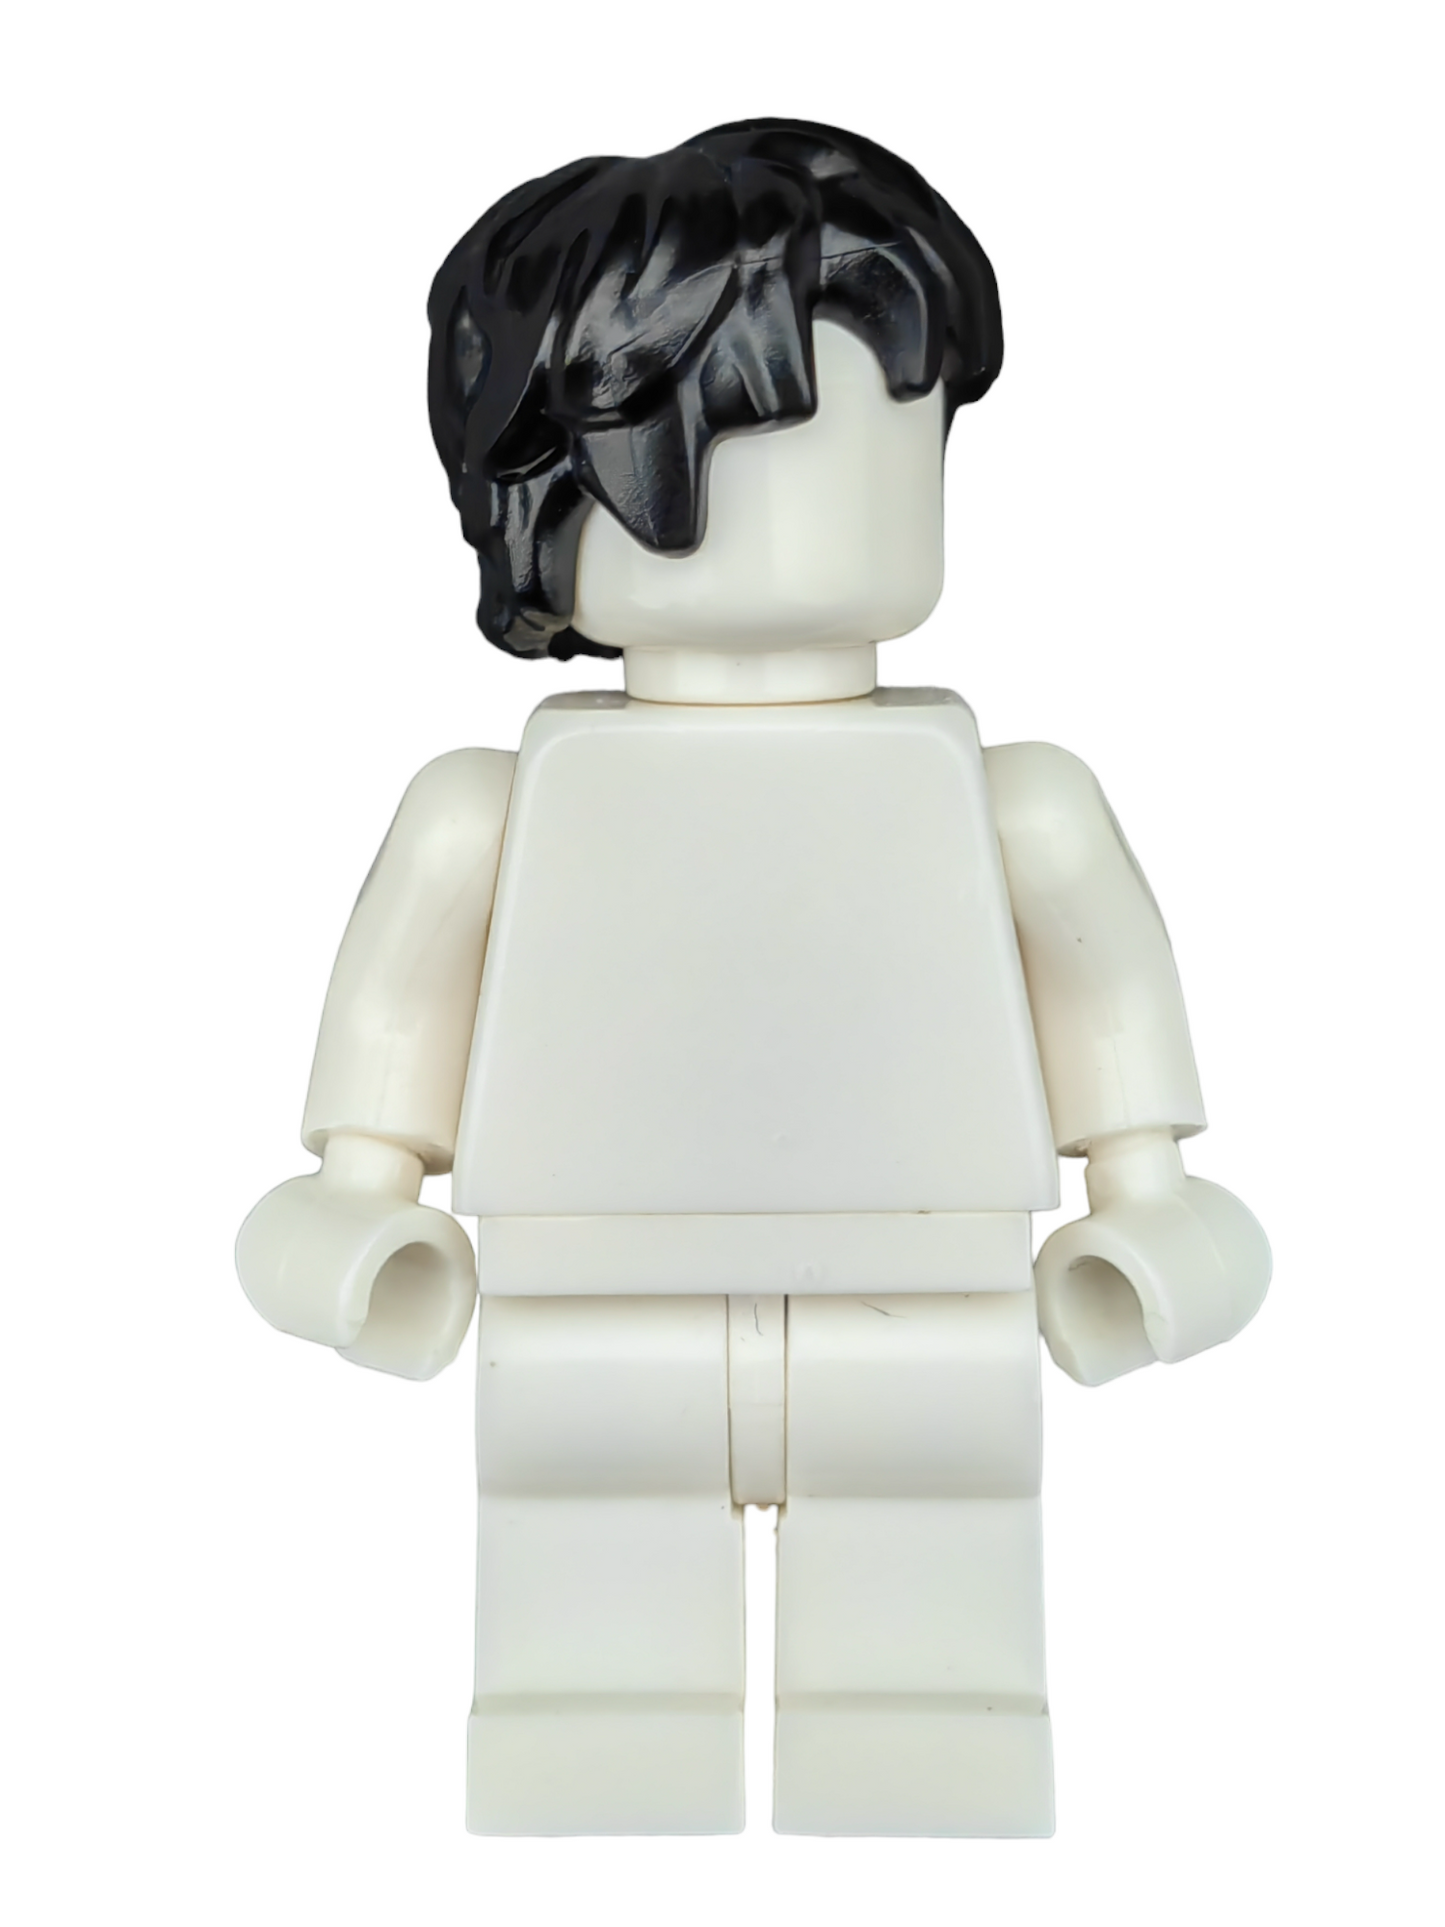 LEGO Wig, Black Hair Harry Potter Style  - UB1184